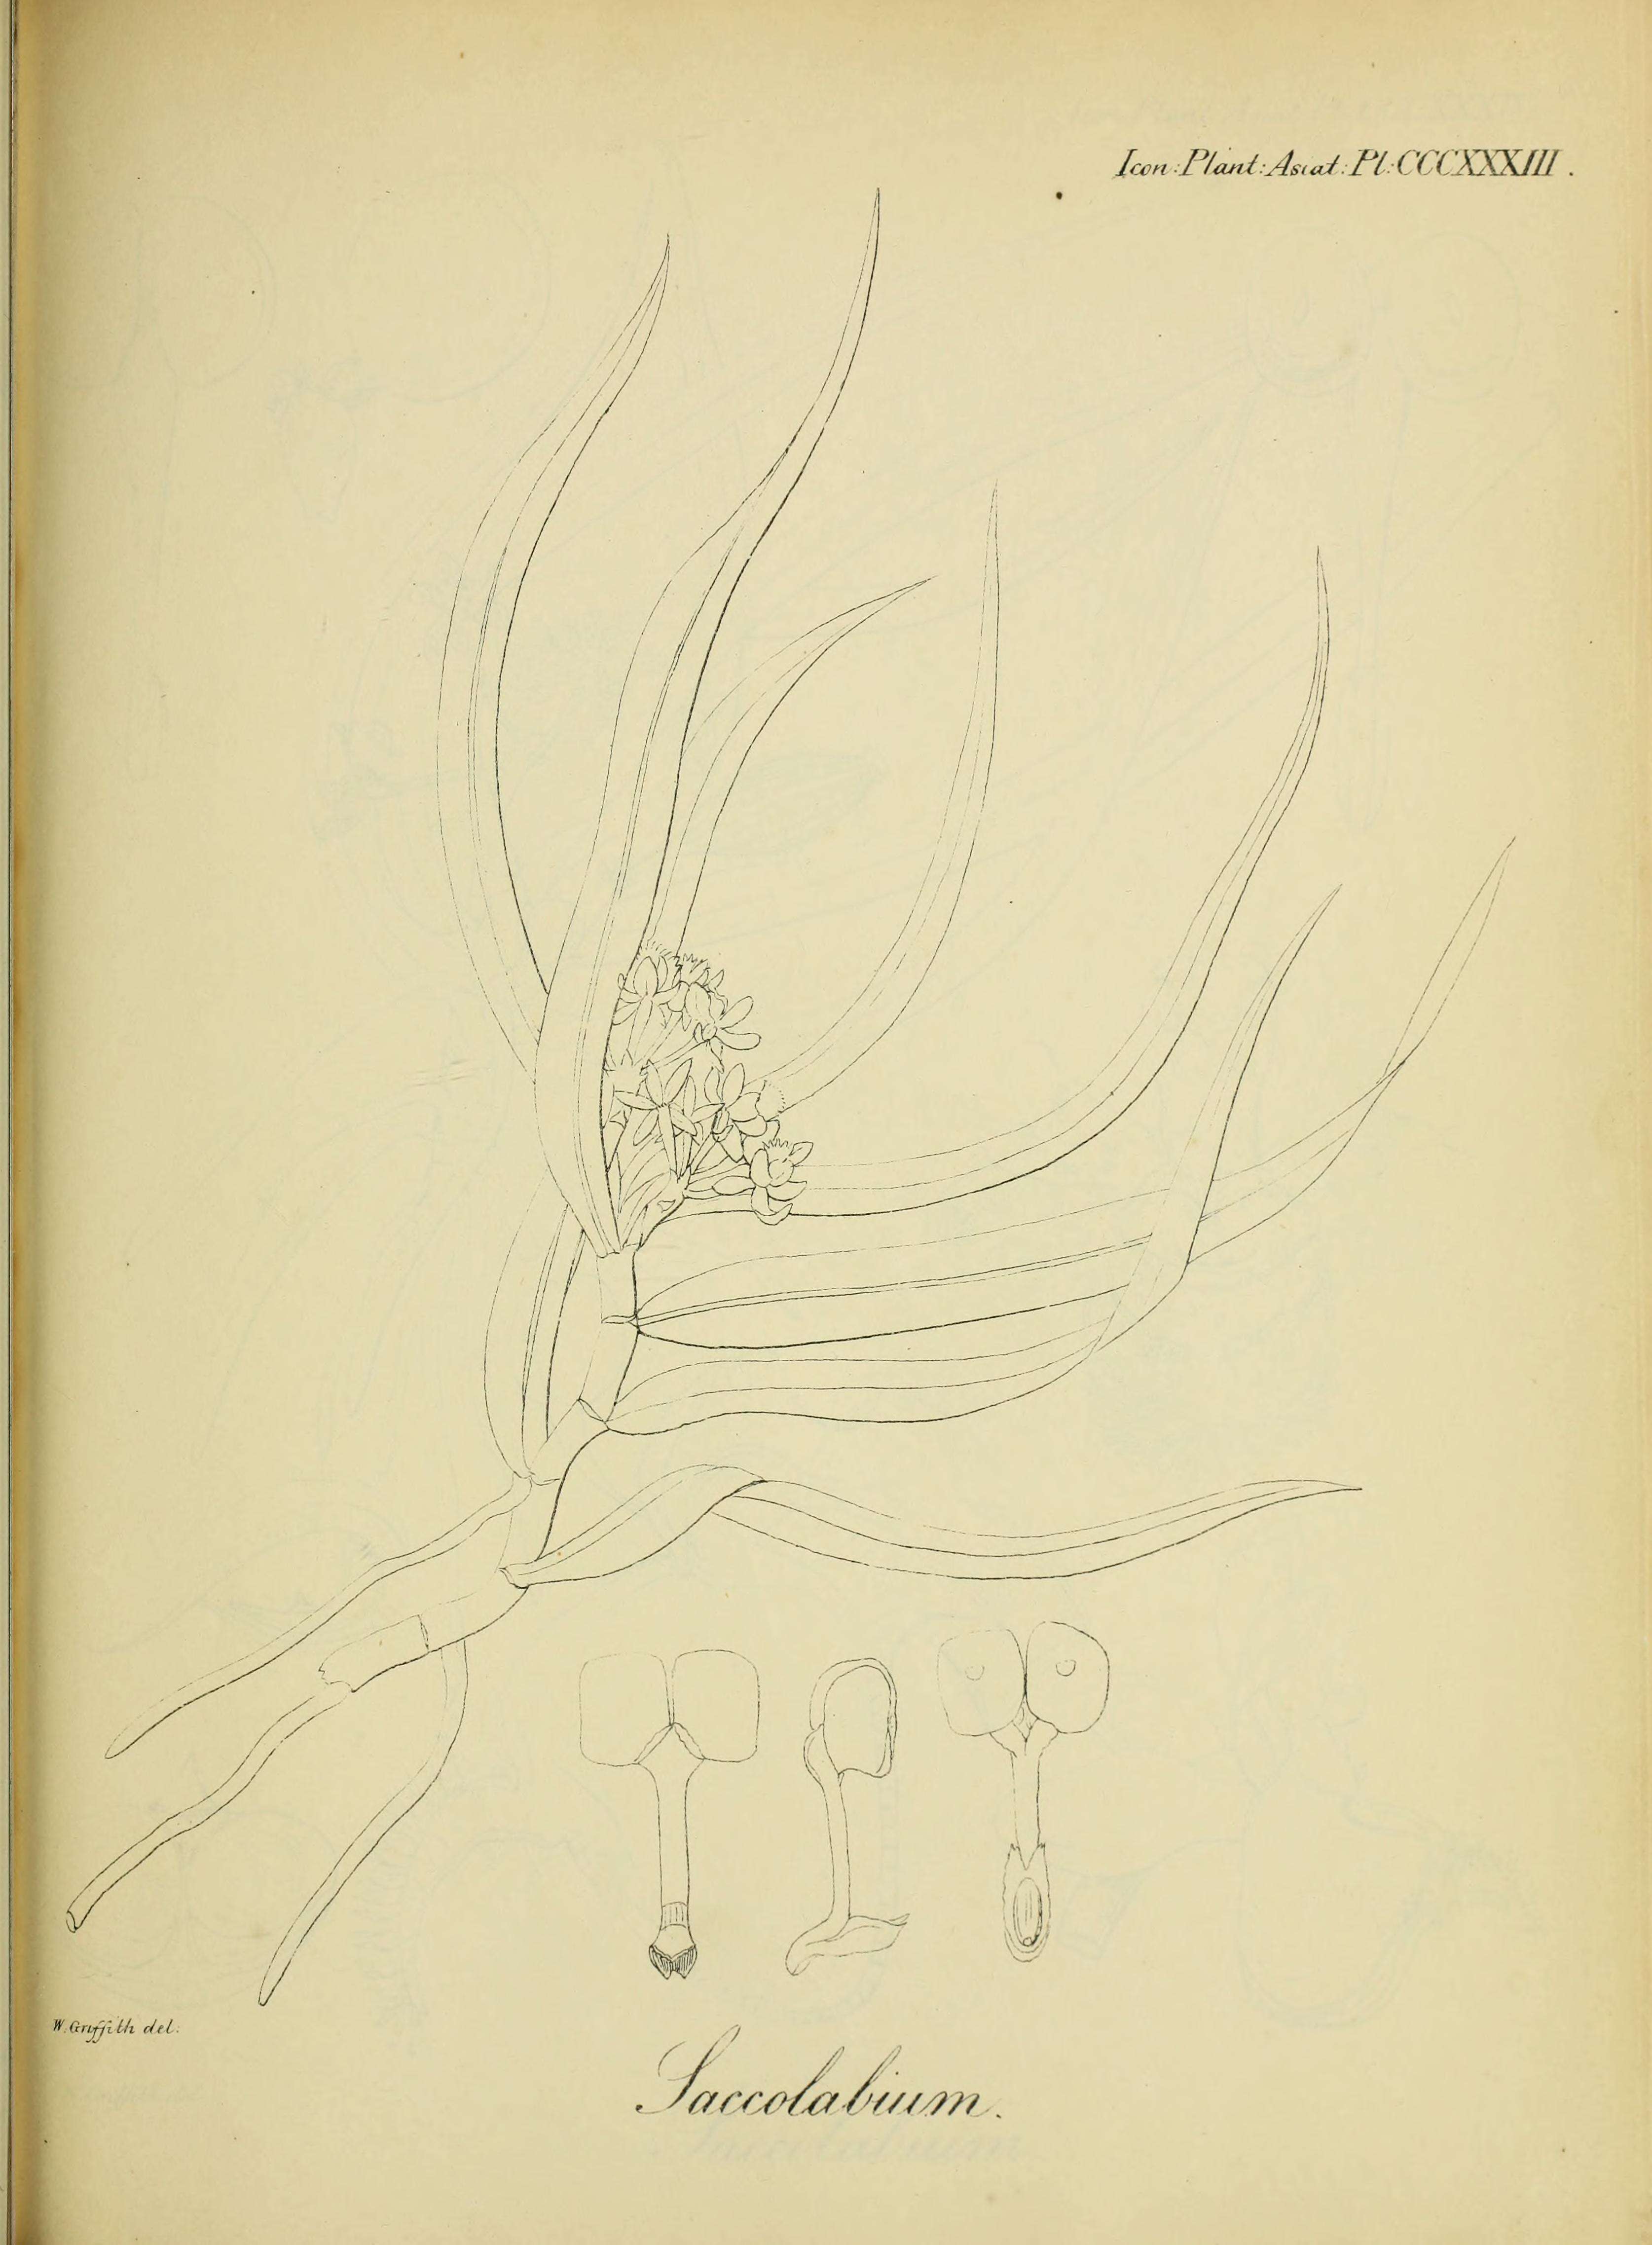 Image of Gastrochilus acutifolius (Lindl.) Kuntze